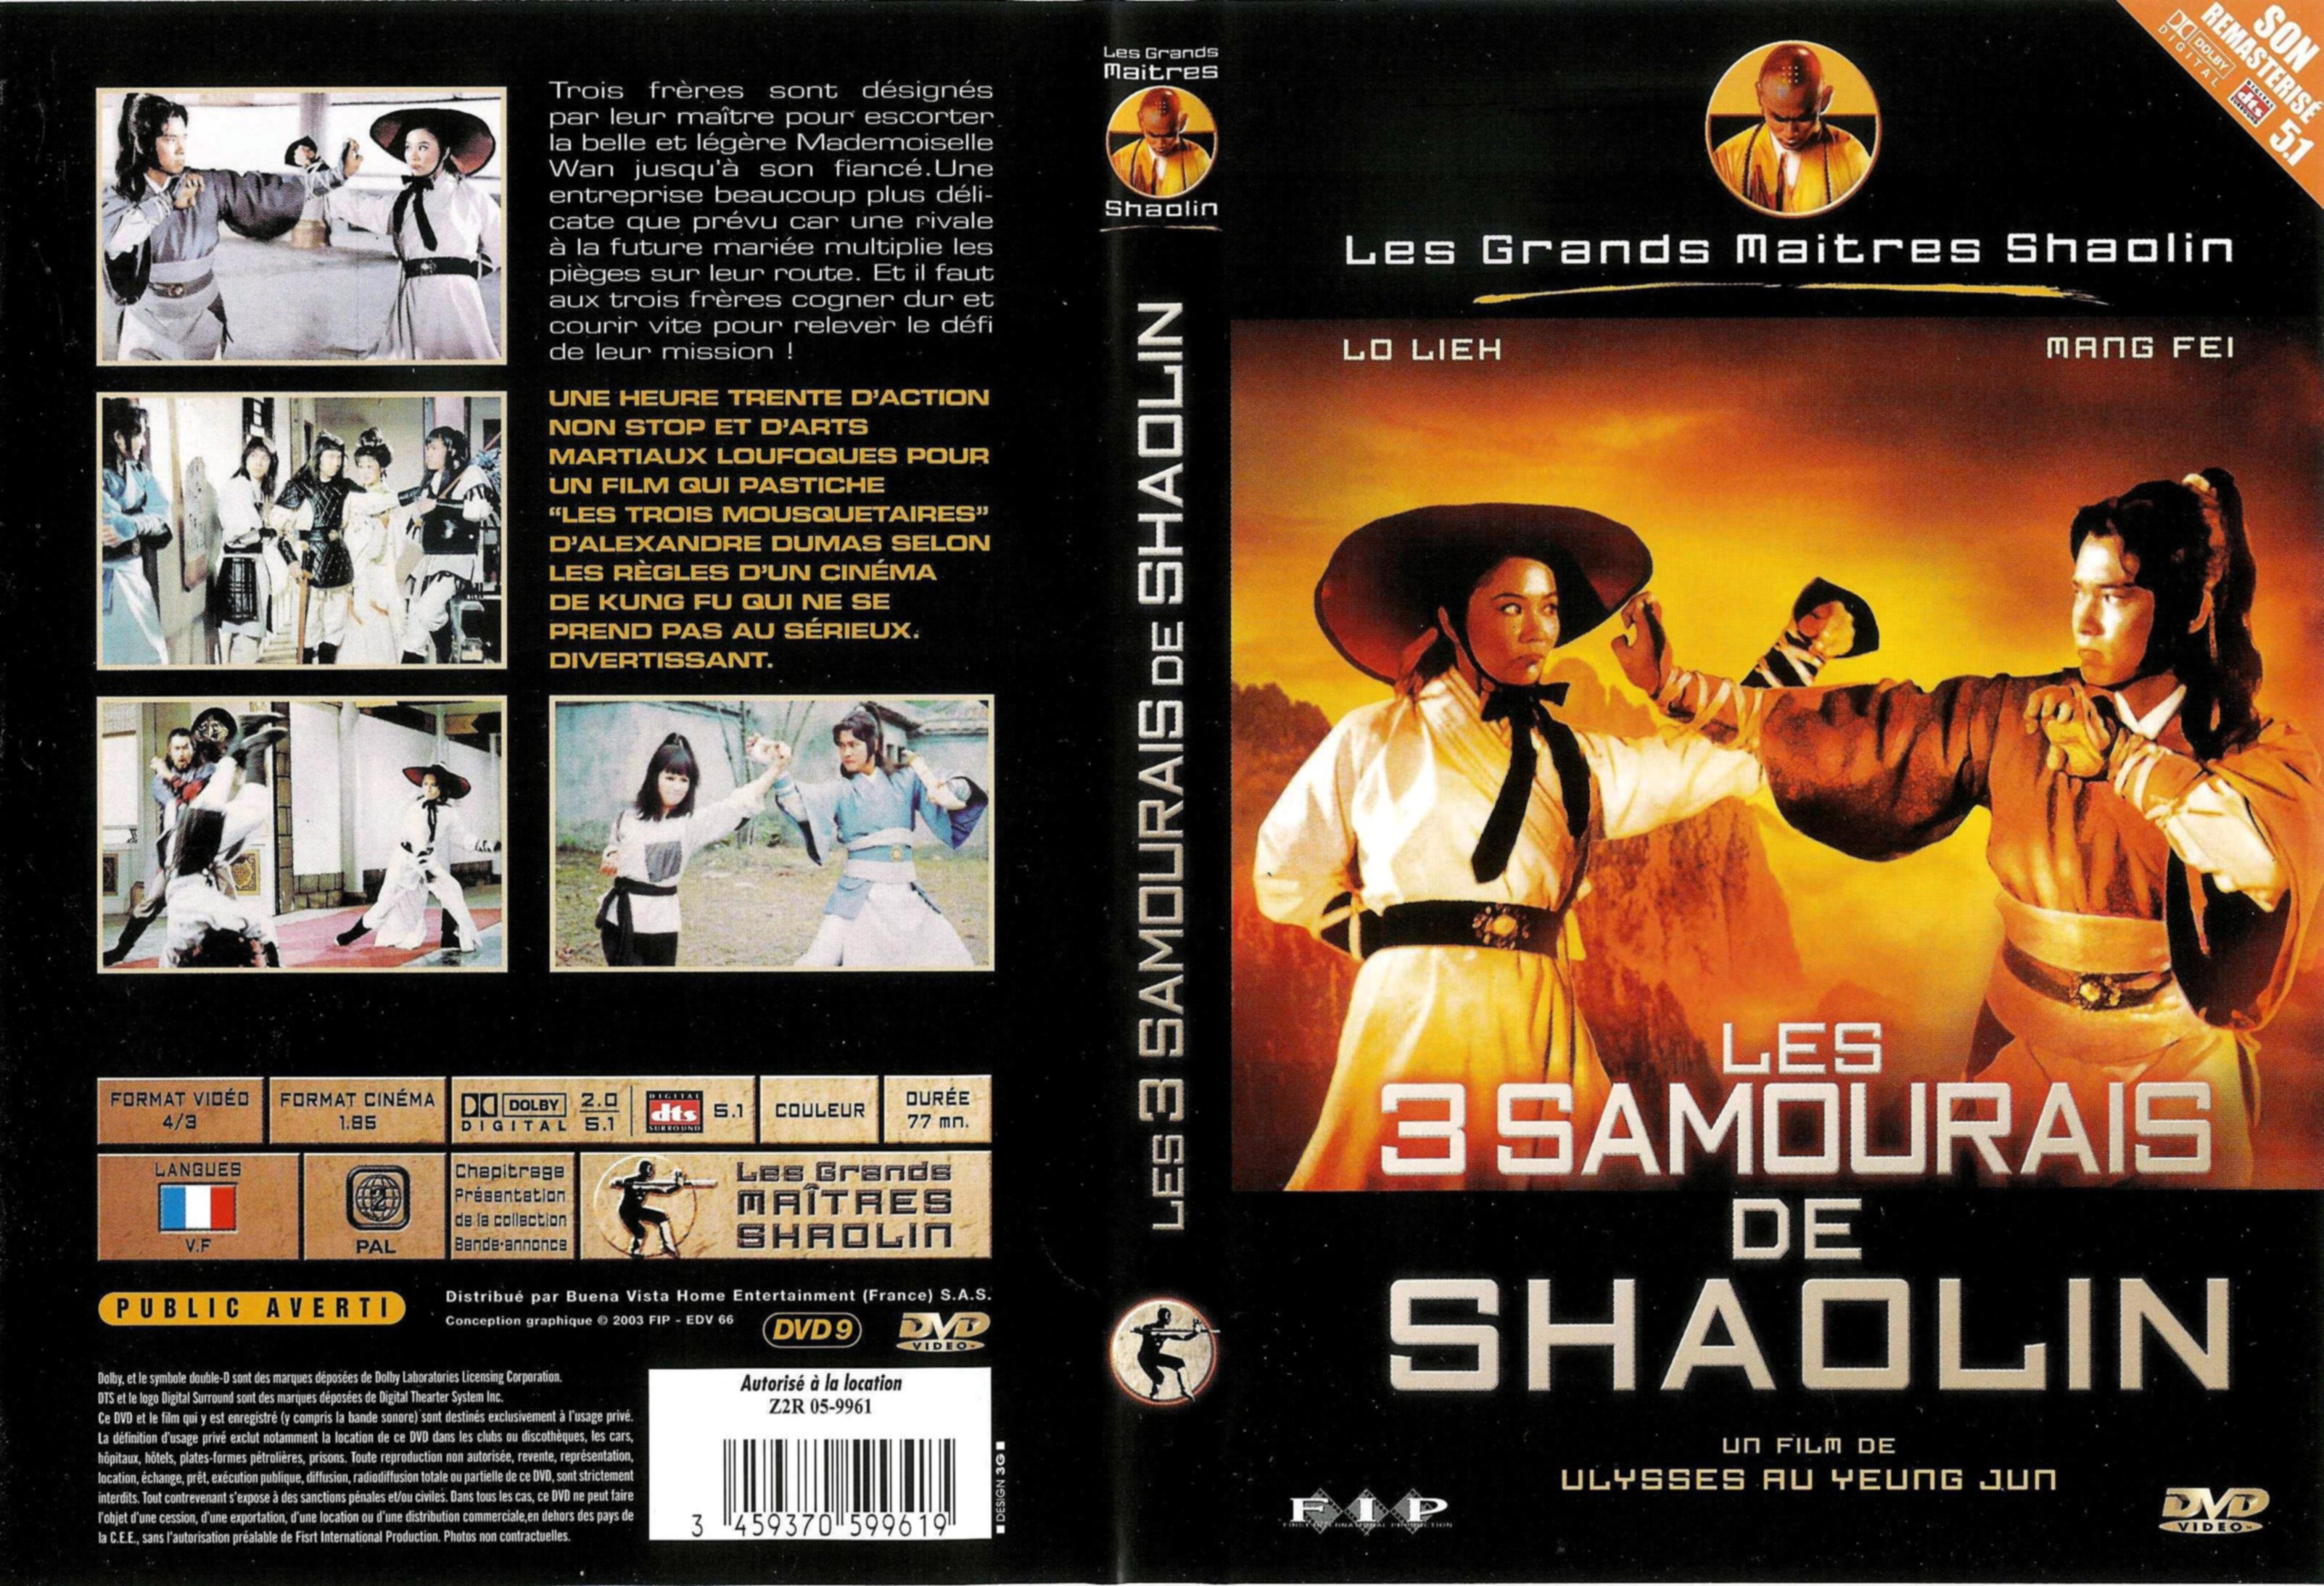 Jaquette DVD Les 3 samourais de shaolin